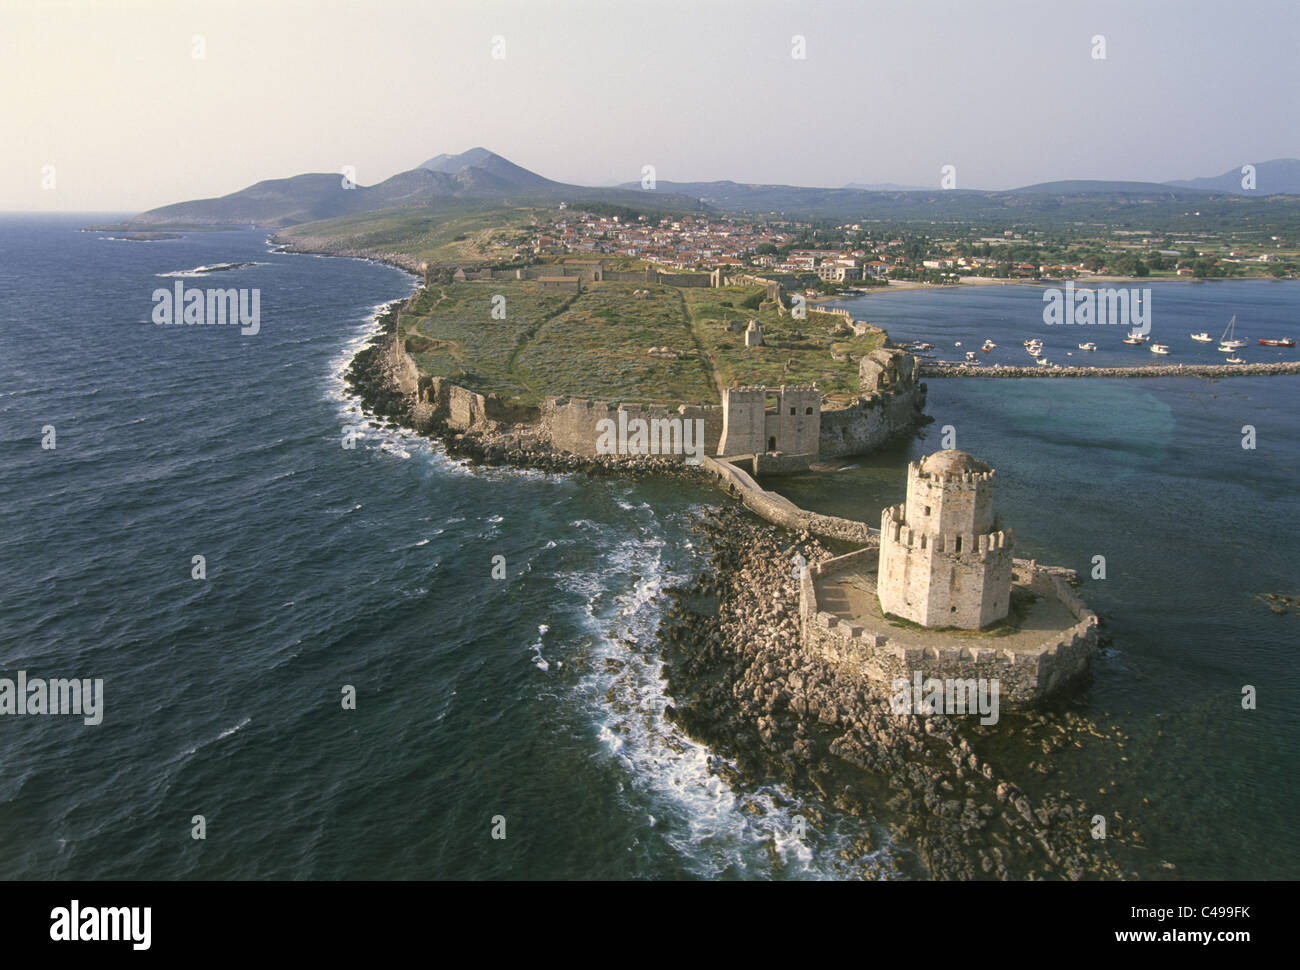 Fotografia aerea della fortezza veneziana sull'isola greca di Methoni Foto Stock